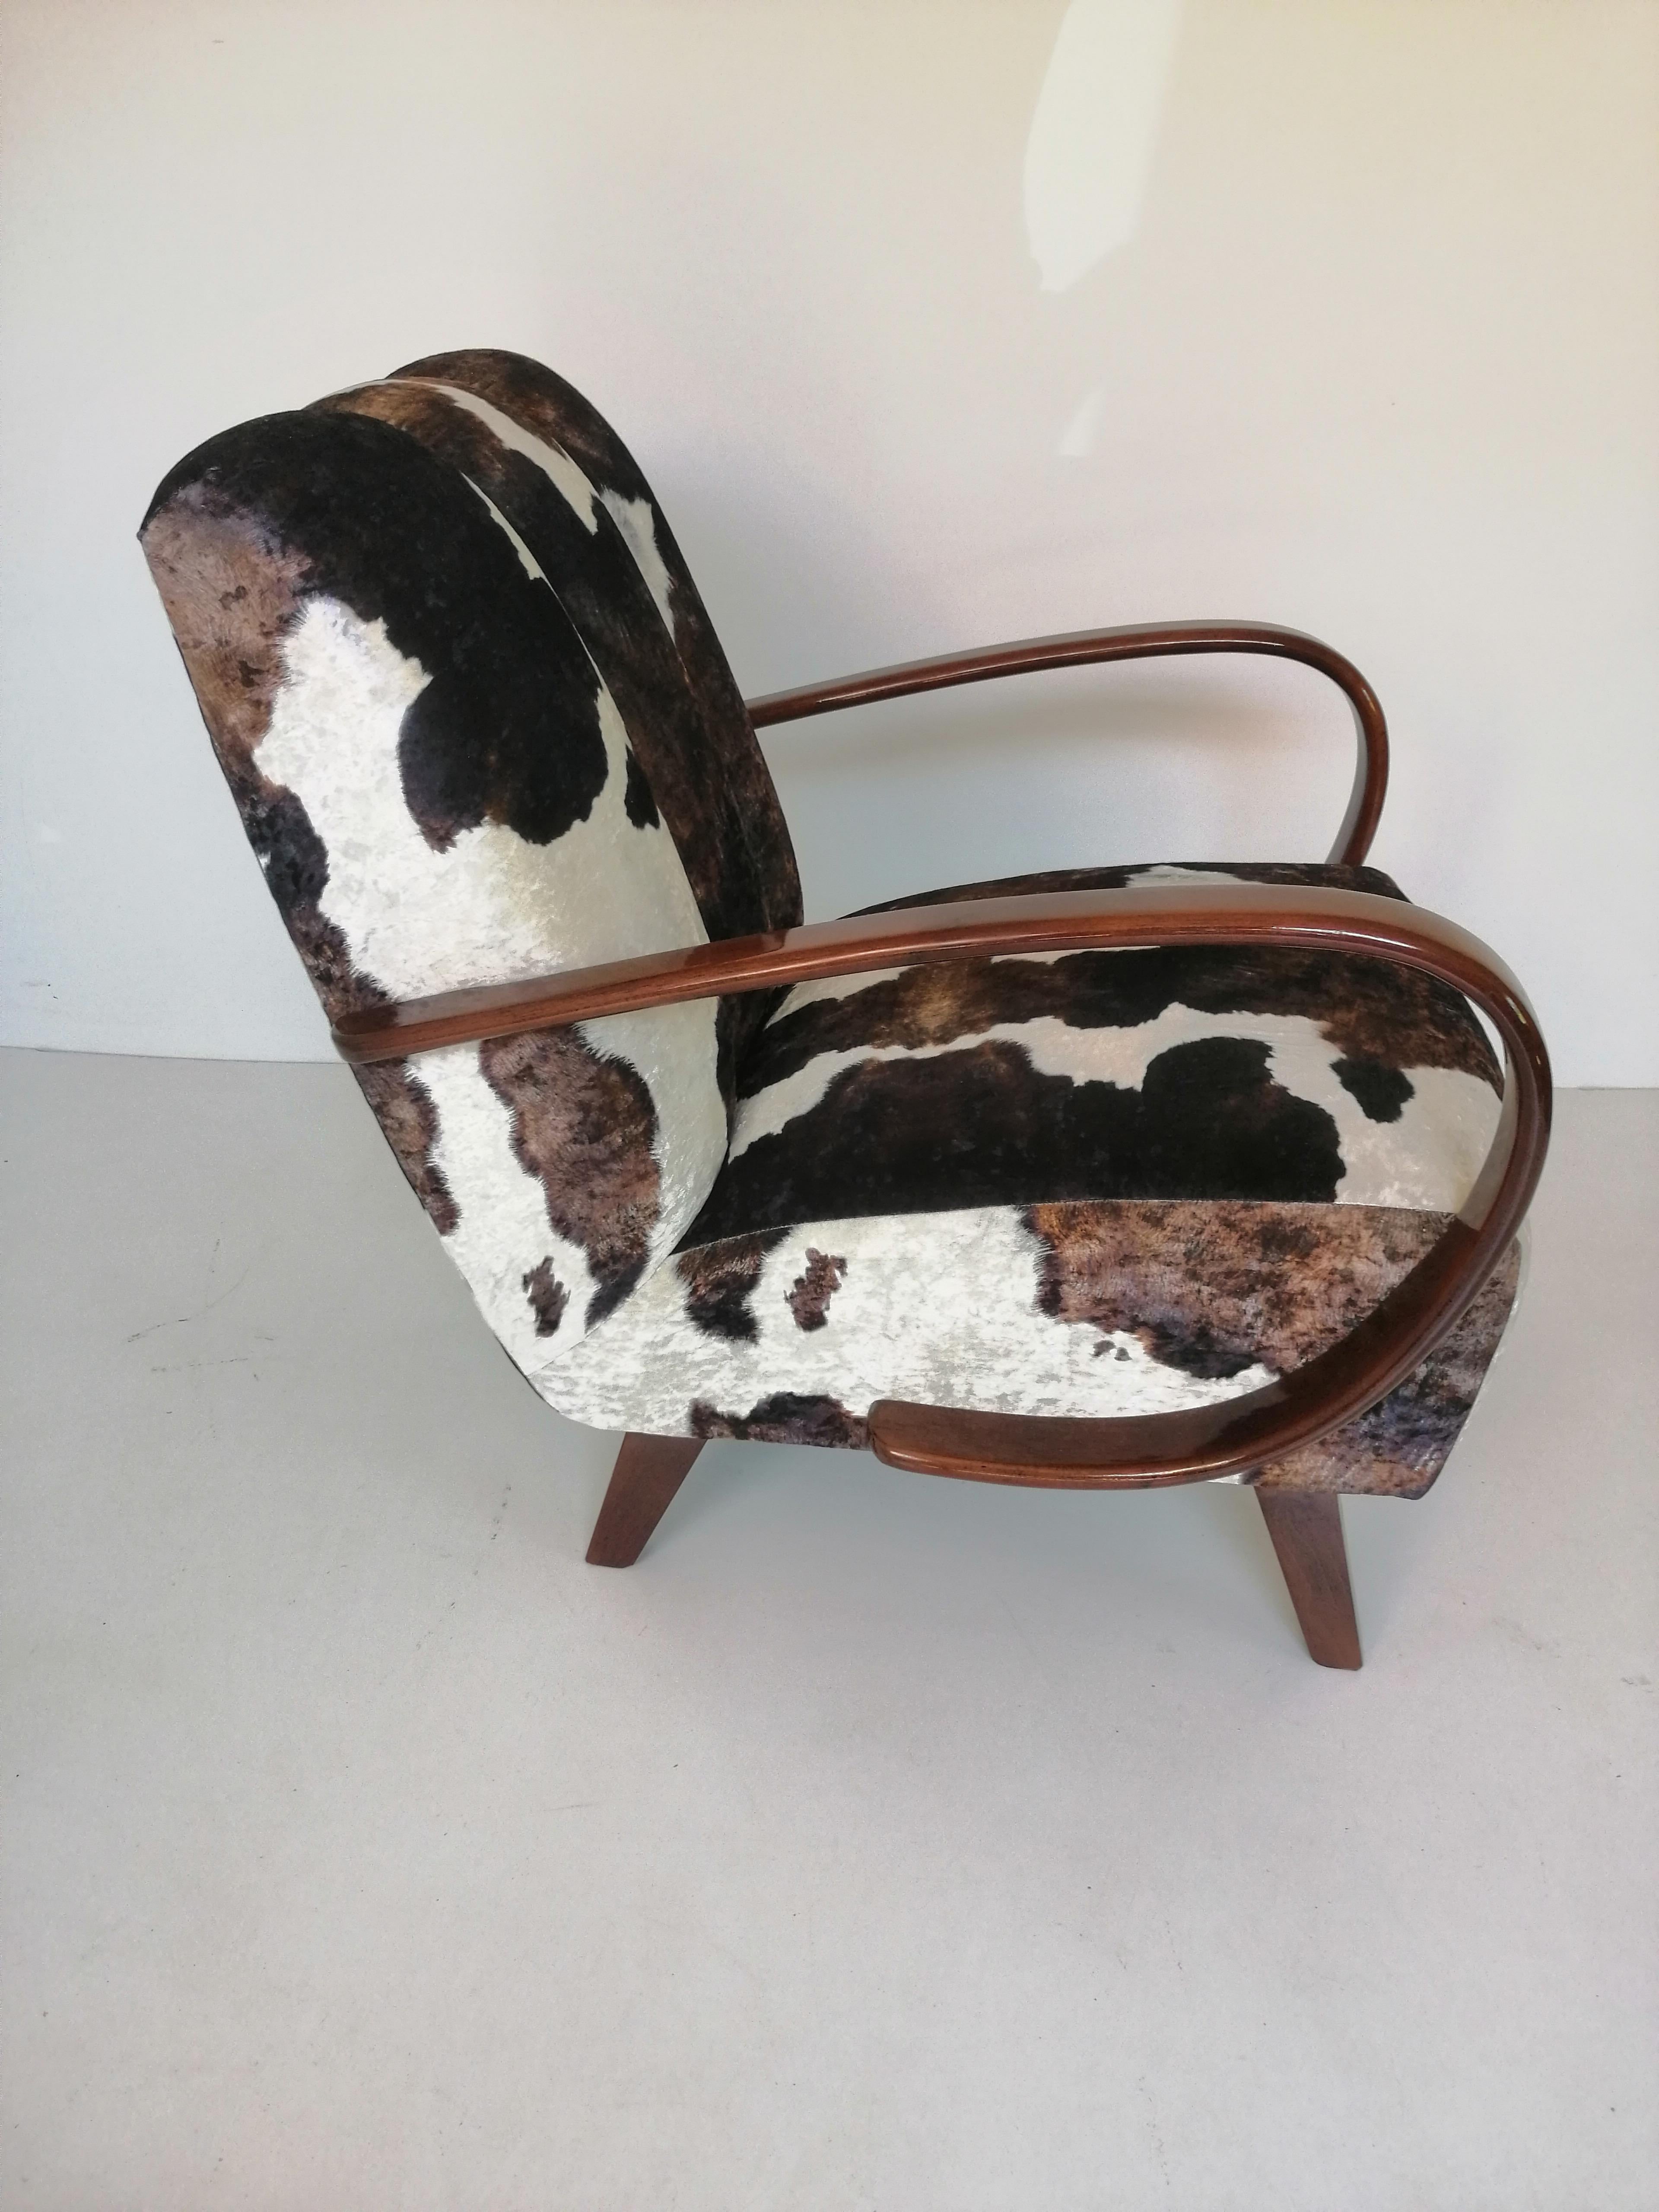 Art-Déco-Sessel aus der Tschechischen Republik von 1940.
Entworfen von dem berühmten tschechischen Designer Jindrich Halabala, der zu den bedeutendsten Schöpfern der Moderne zählt. Der Höhepunkt seiner Karriere fiel in die 1930er und 1940er Jahre,